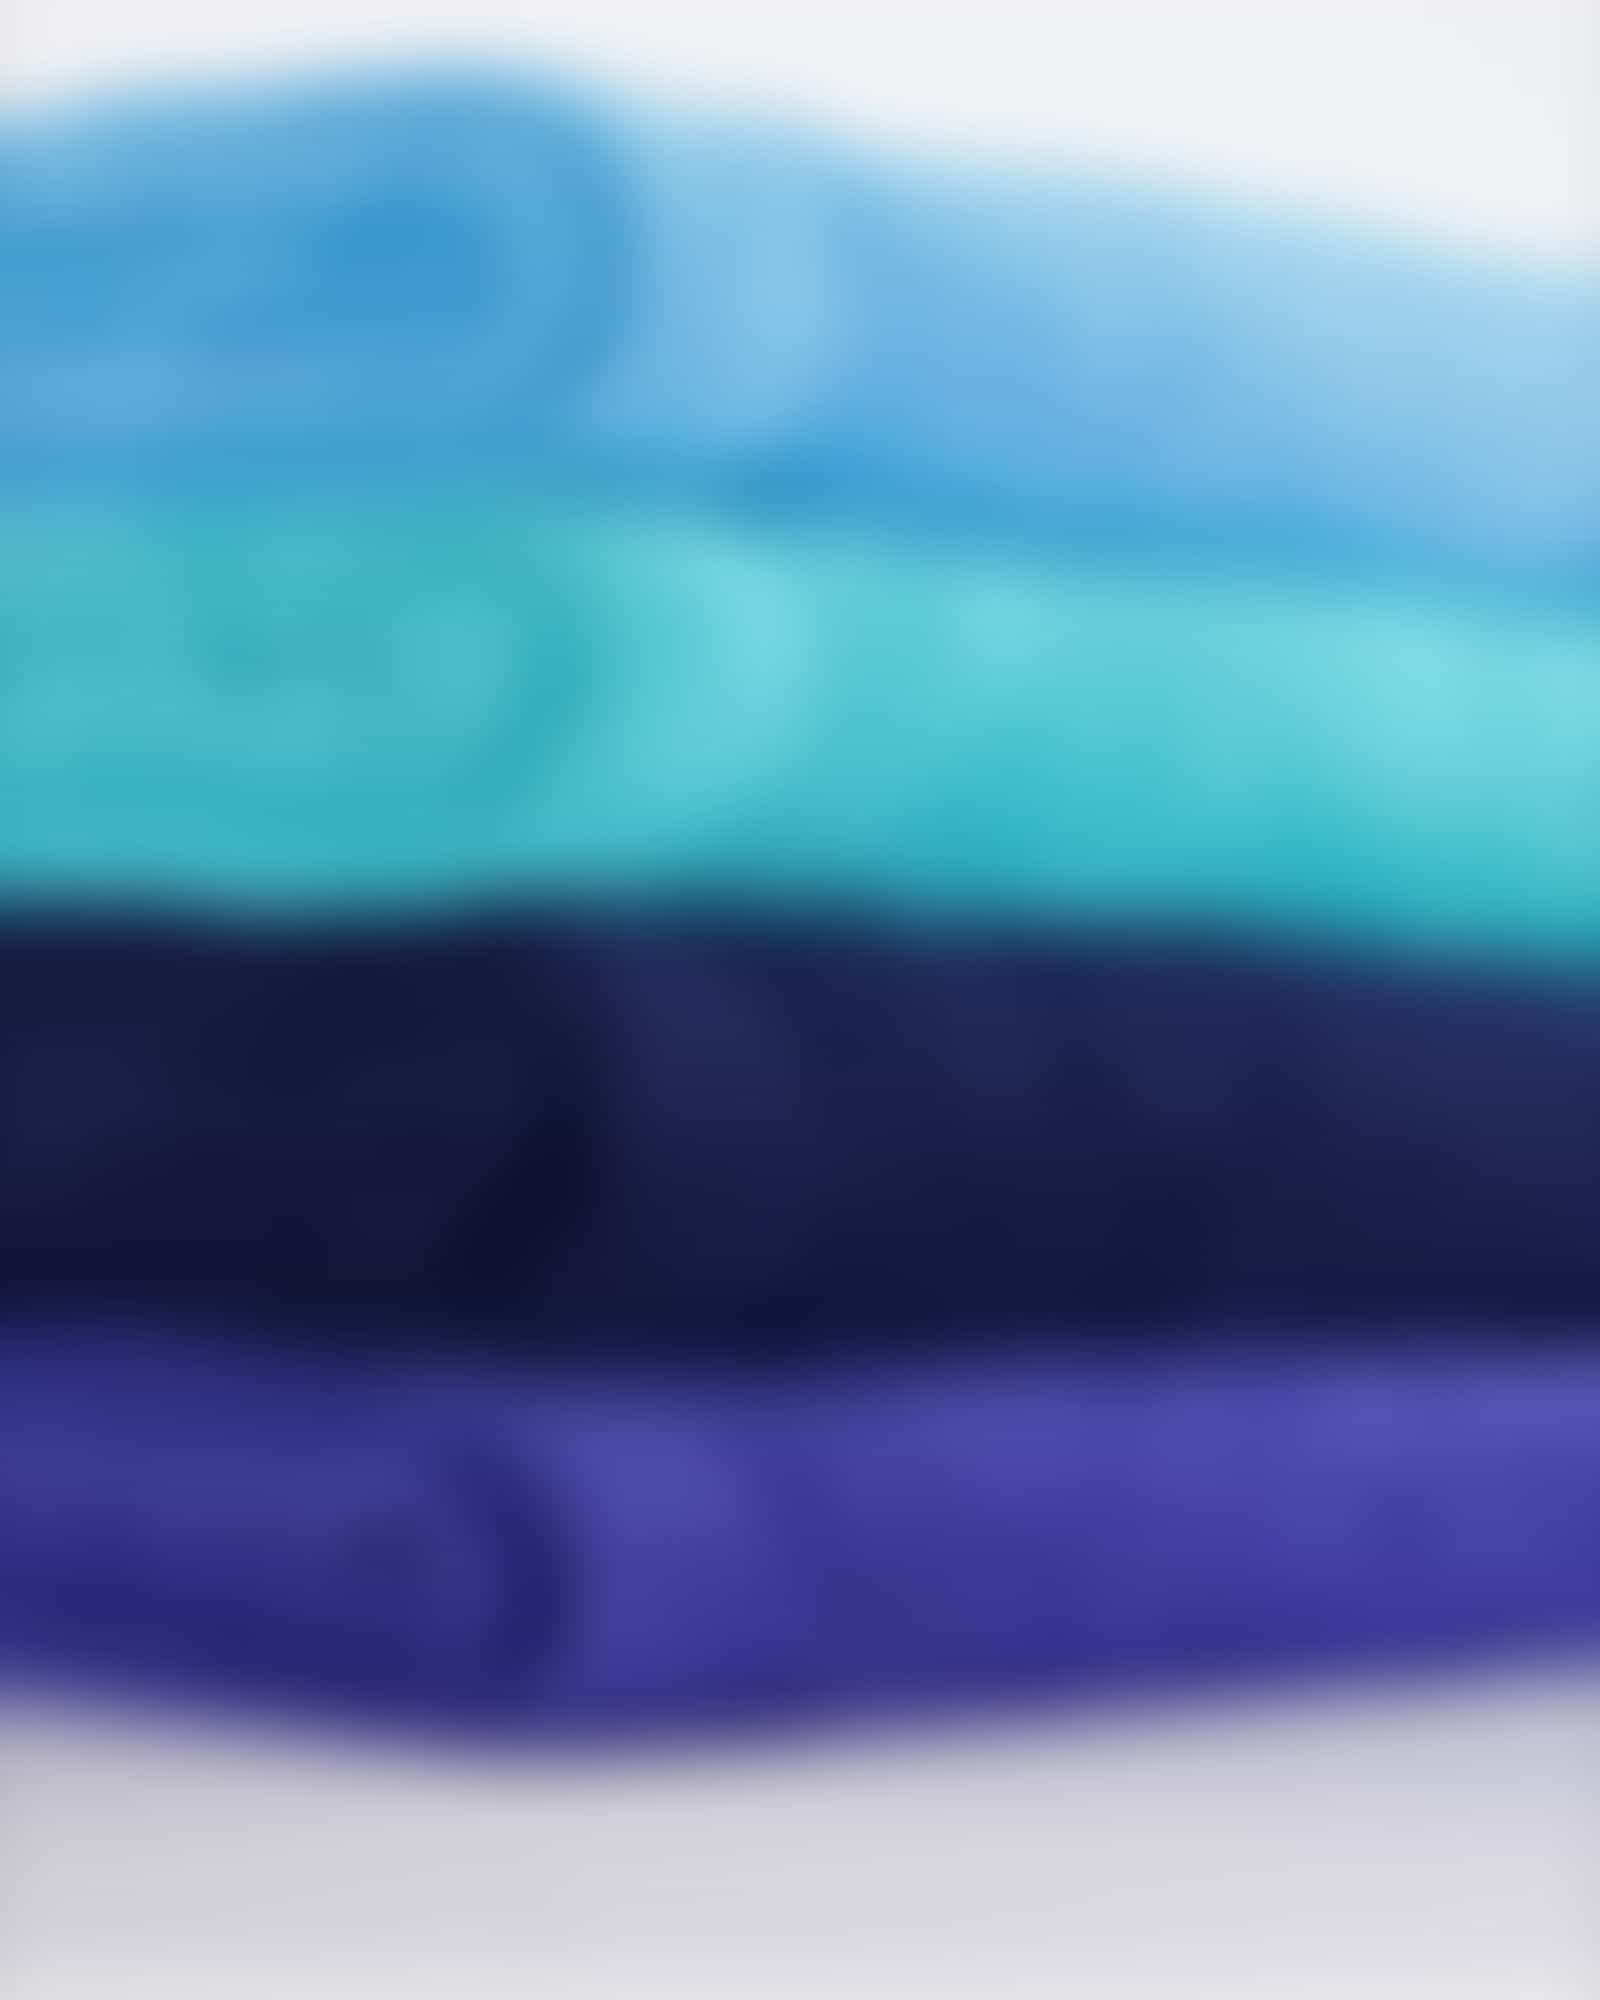 Cawö - Life Style Uni 7007 - Farbe: nachtblau - 111 Handtuch 50x100 cm